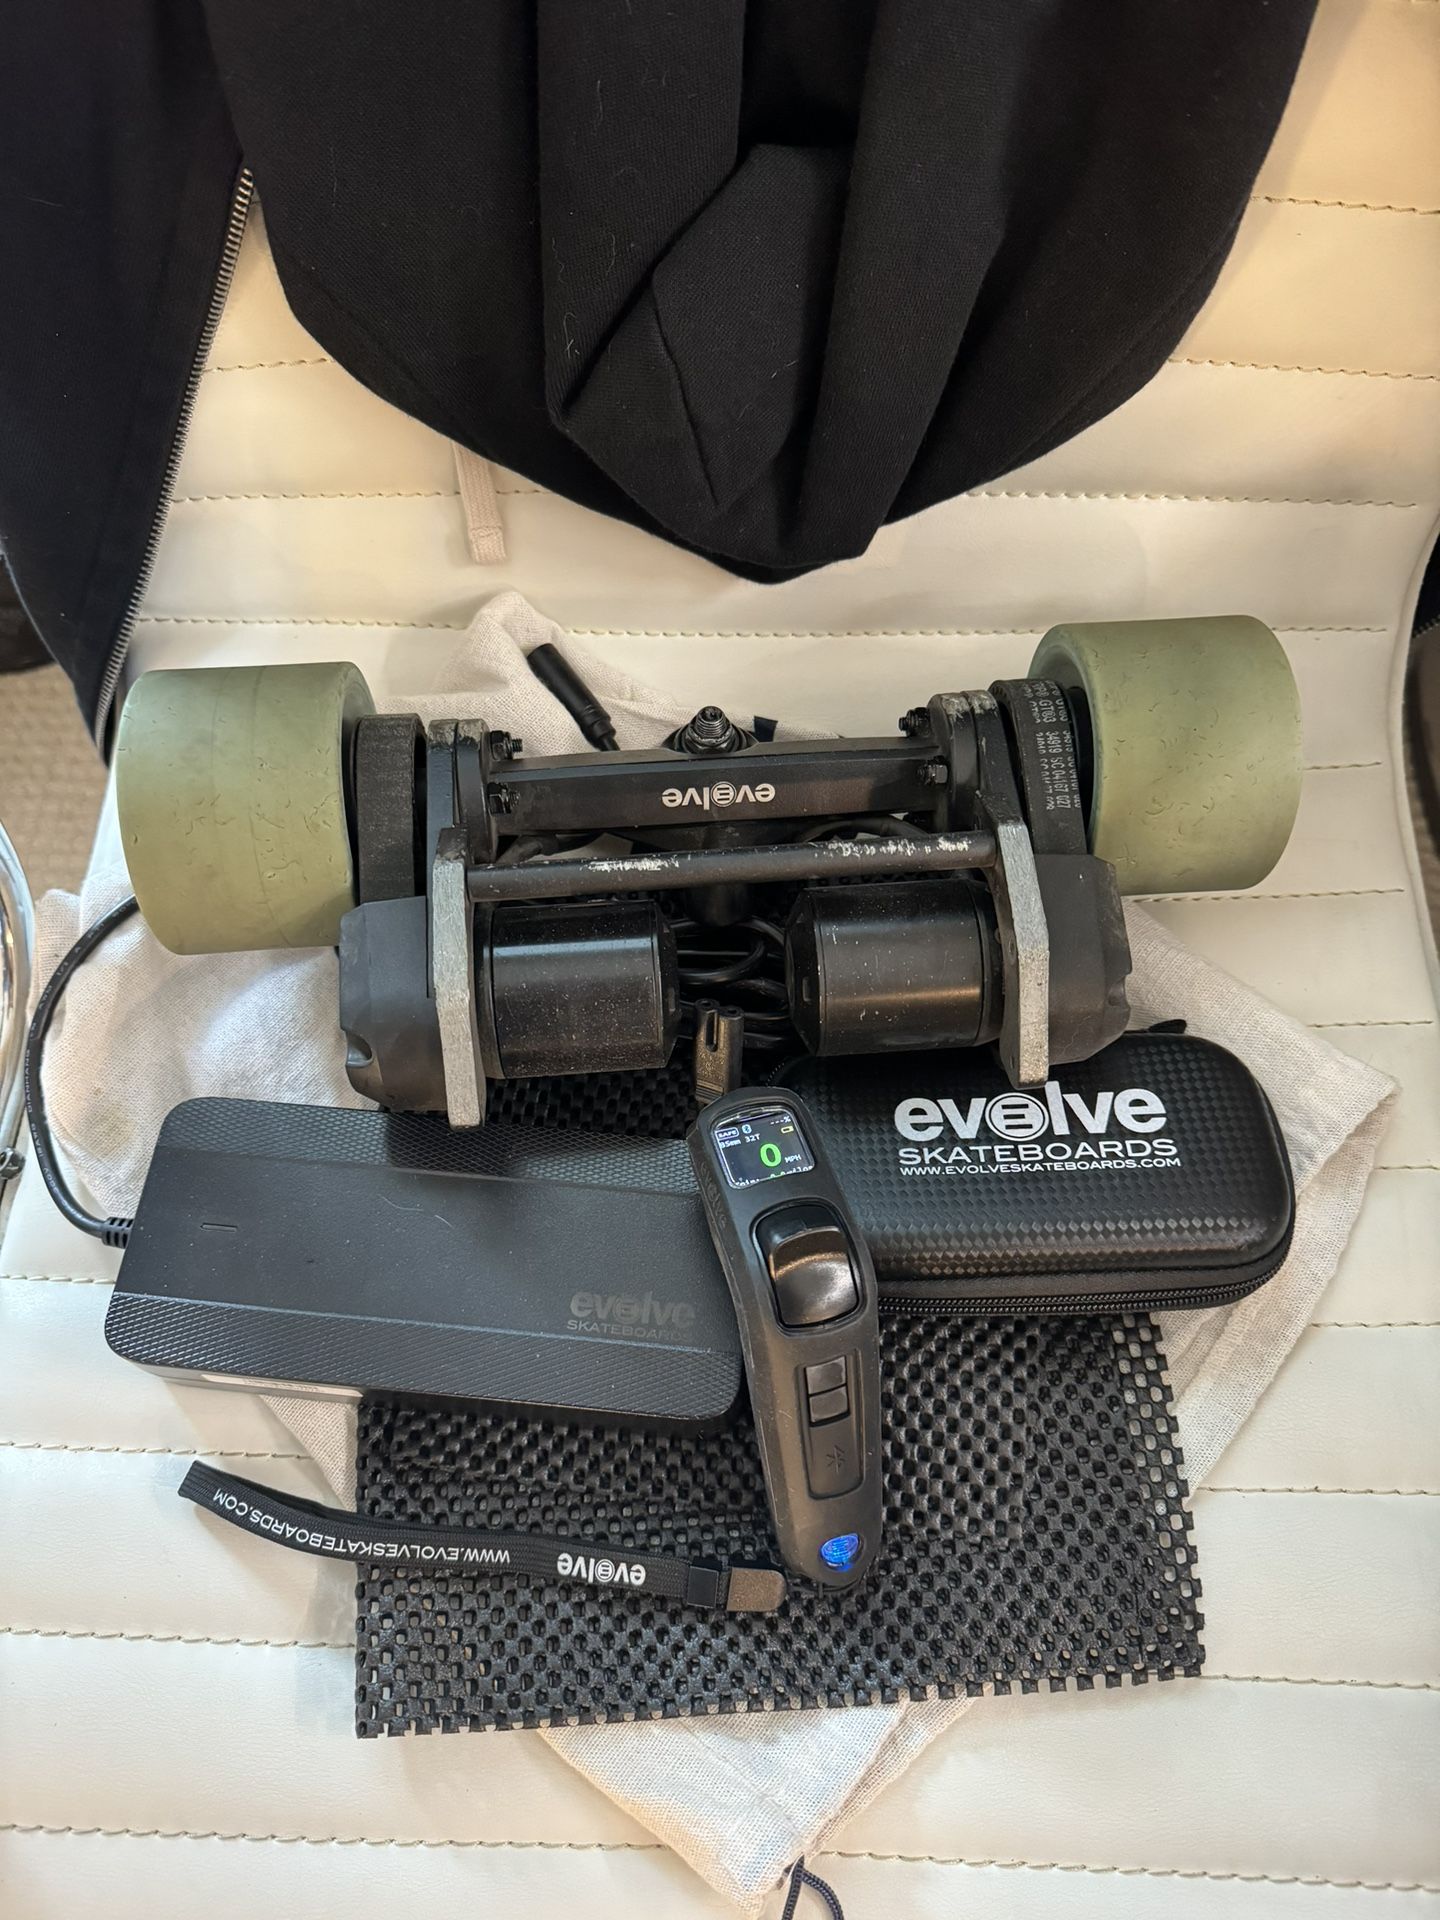 Evolve Stoke 1st Gen eSkateboard Remote/Motors/Charger